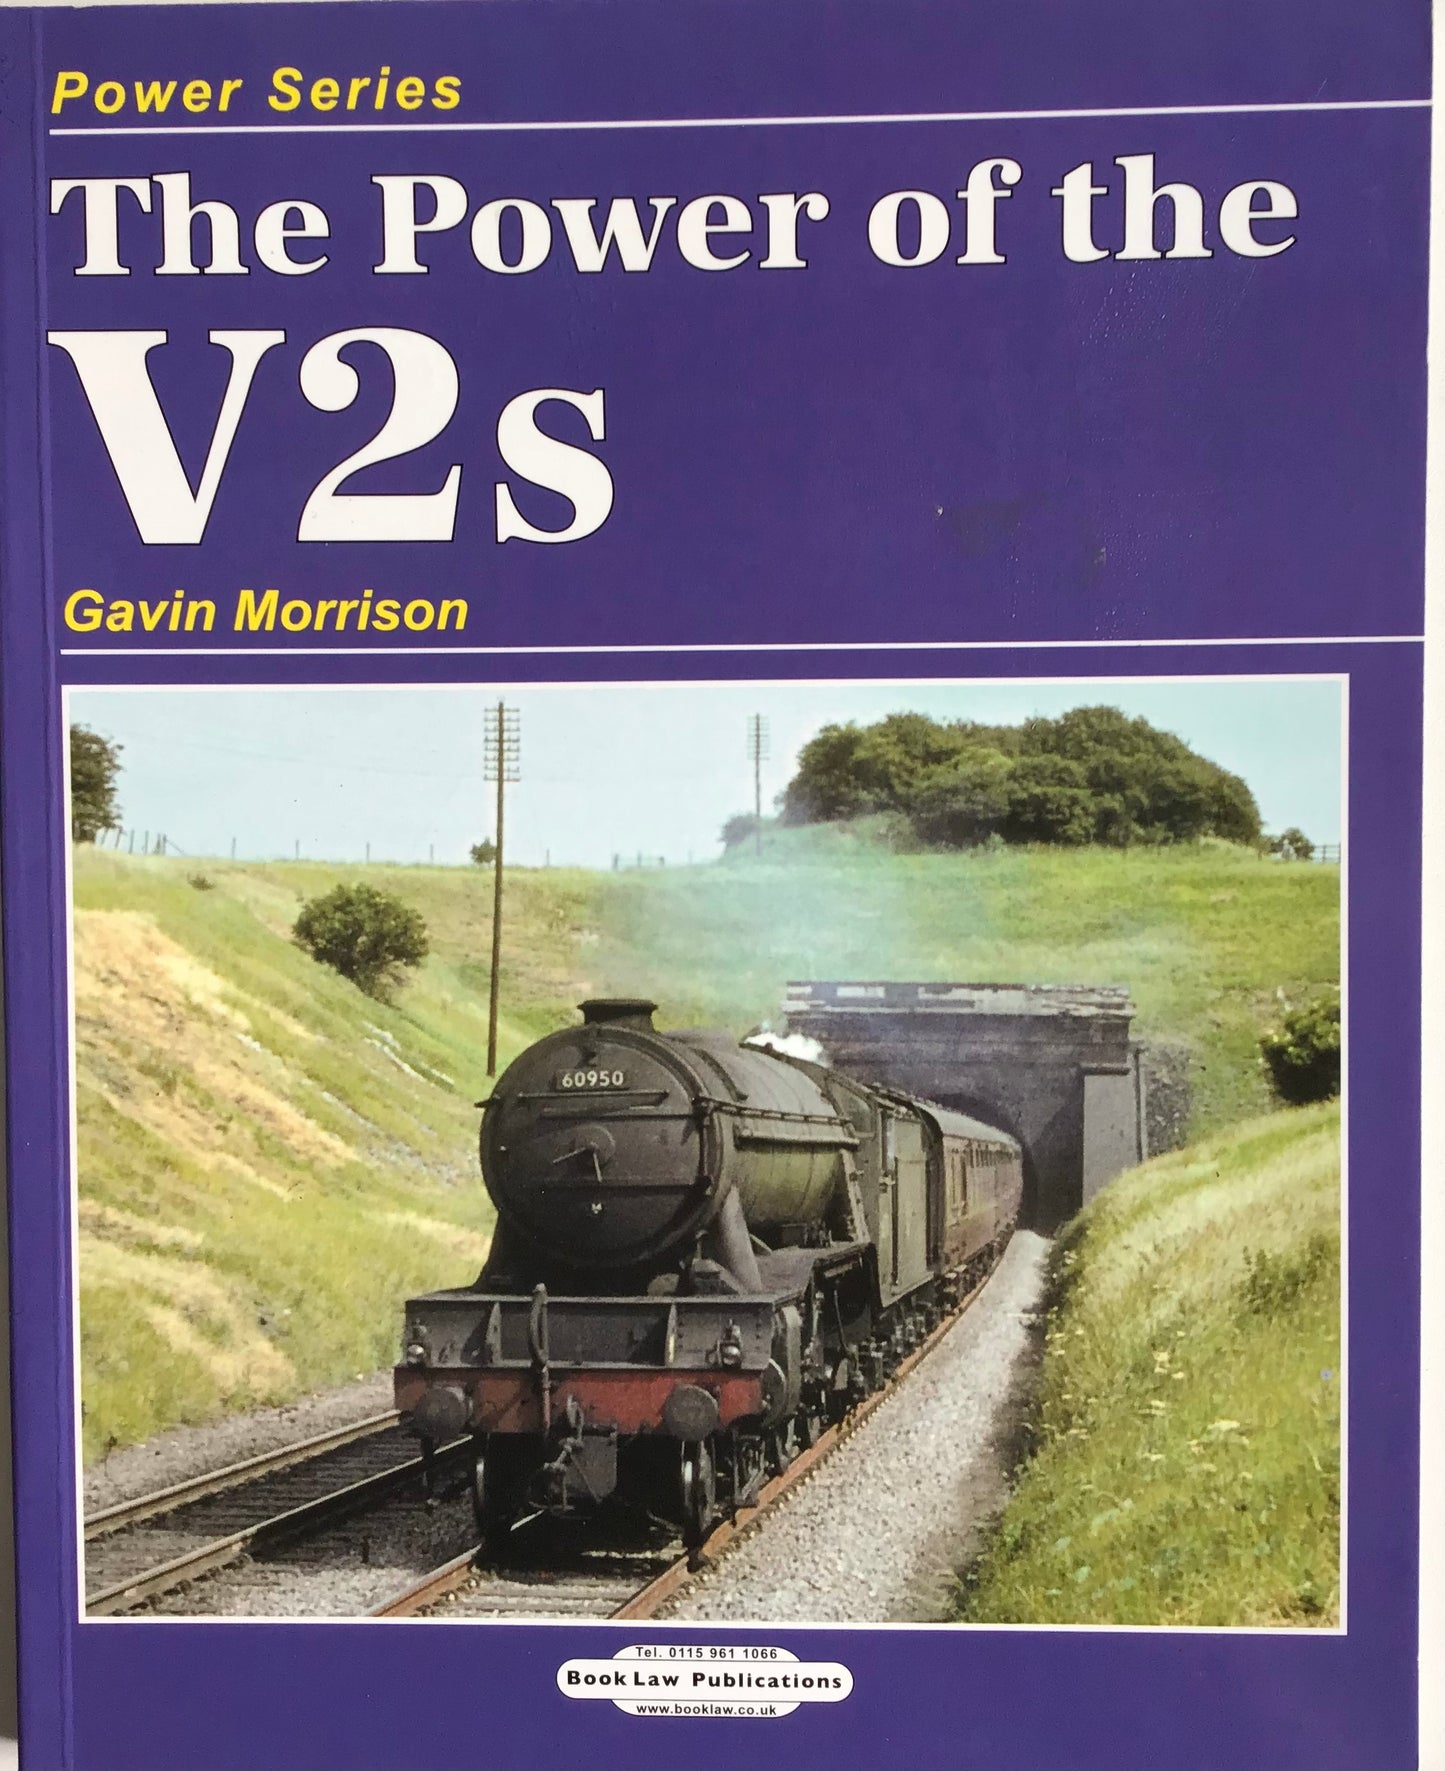 The Power of the V2s by Gavin Morrison - Chester Model Centre